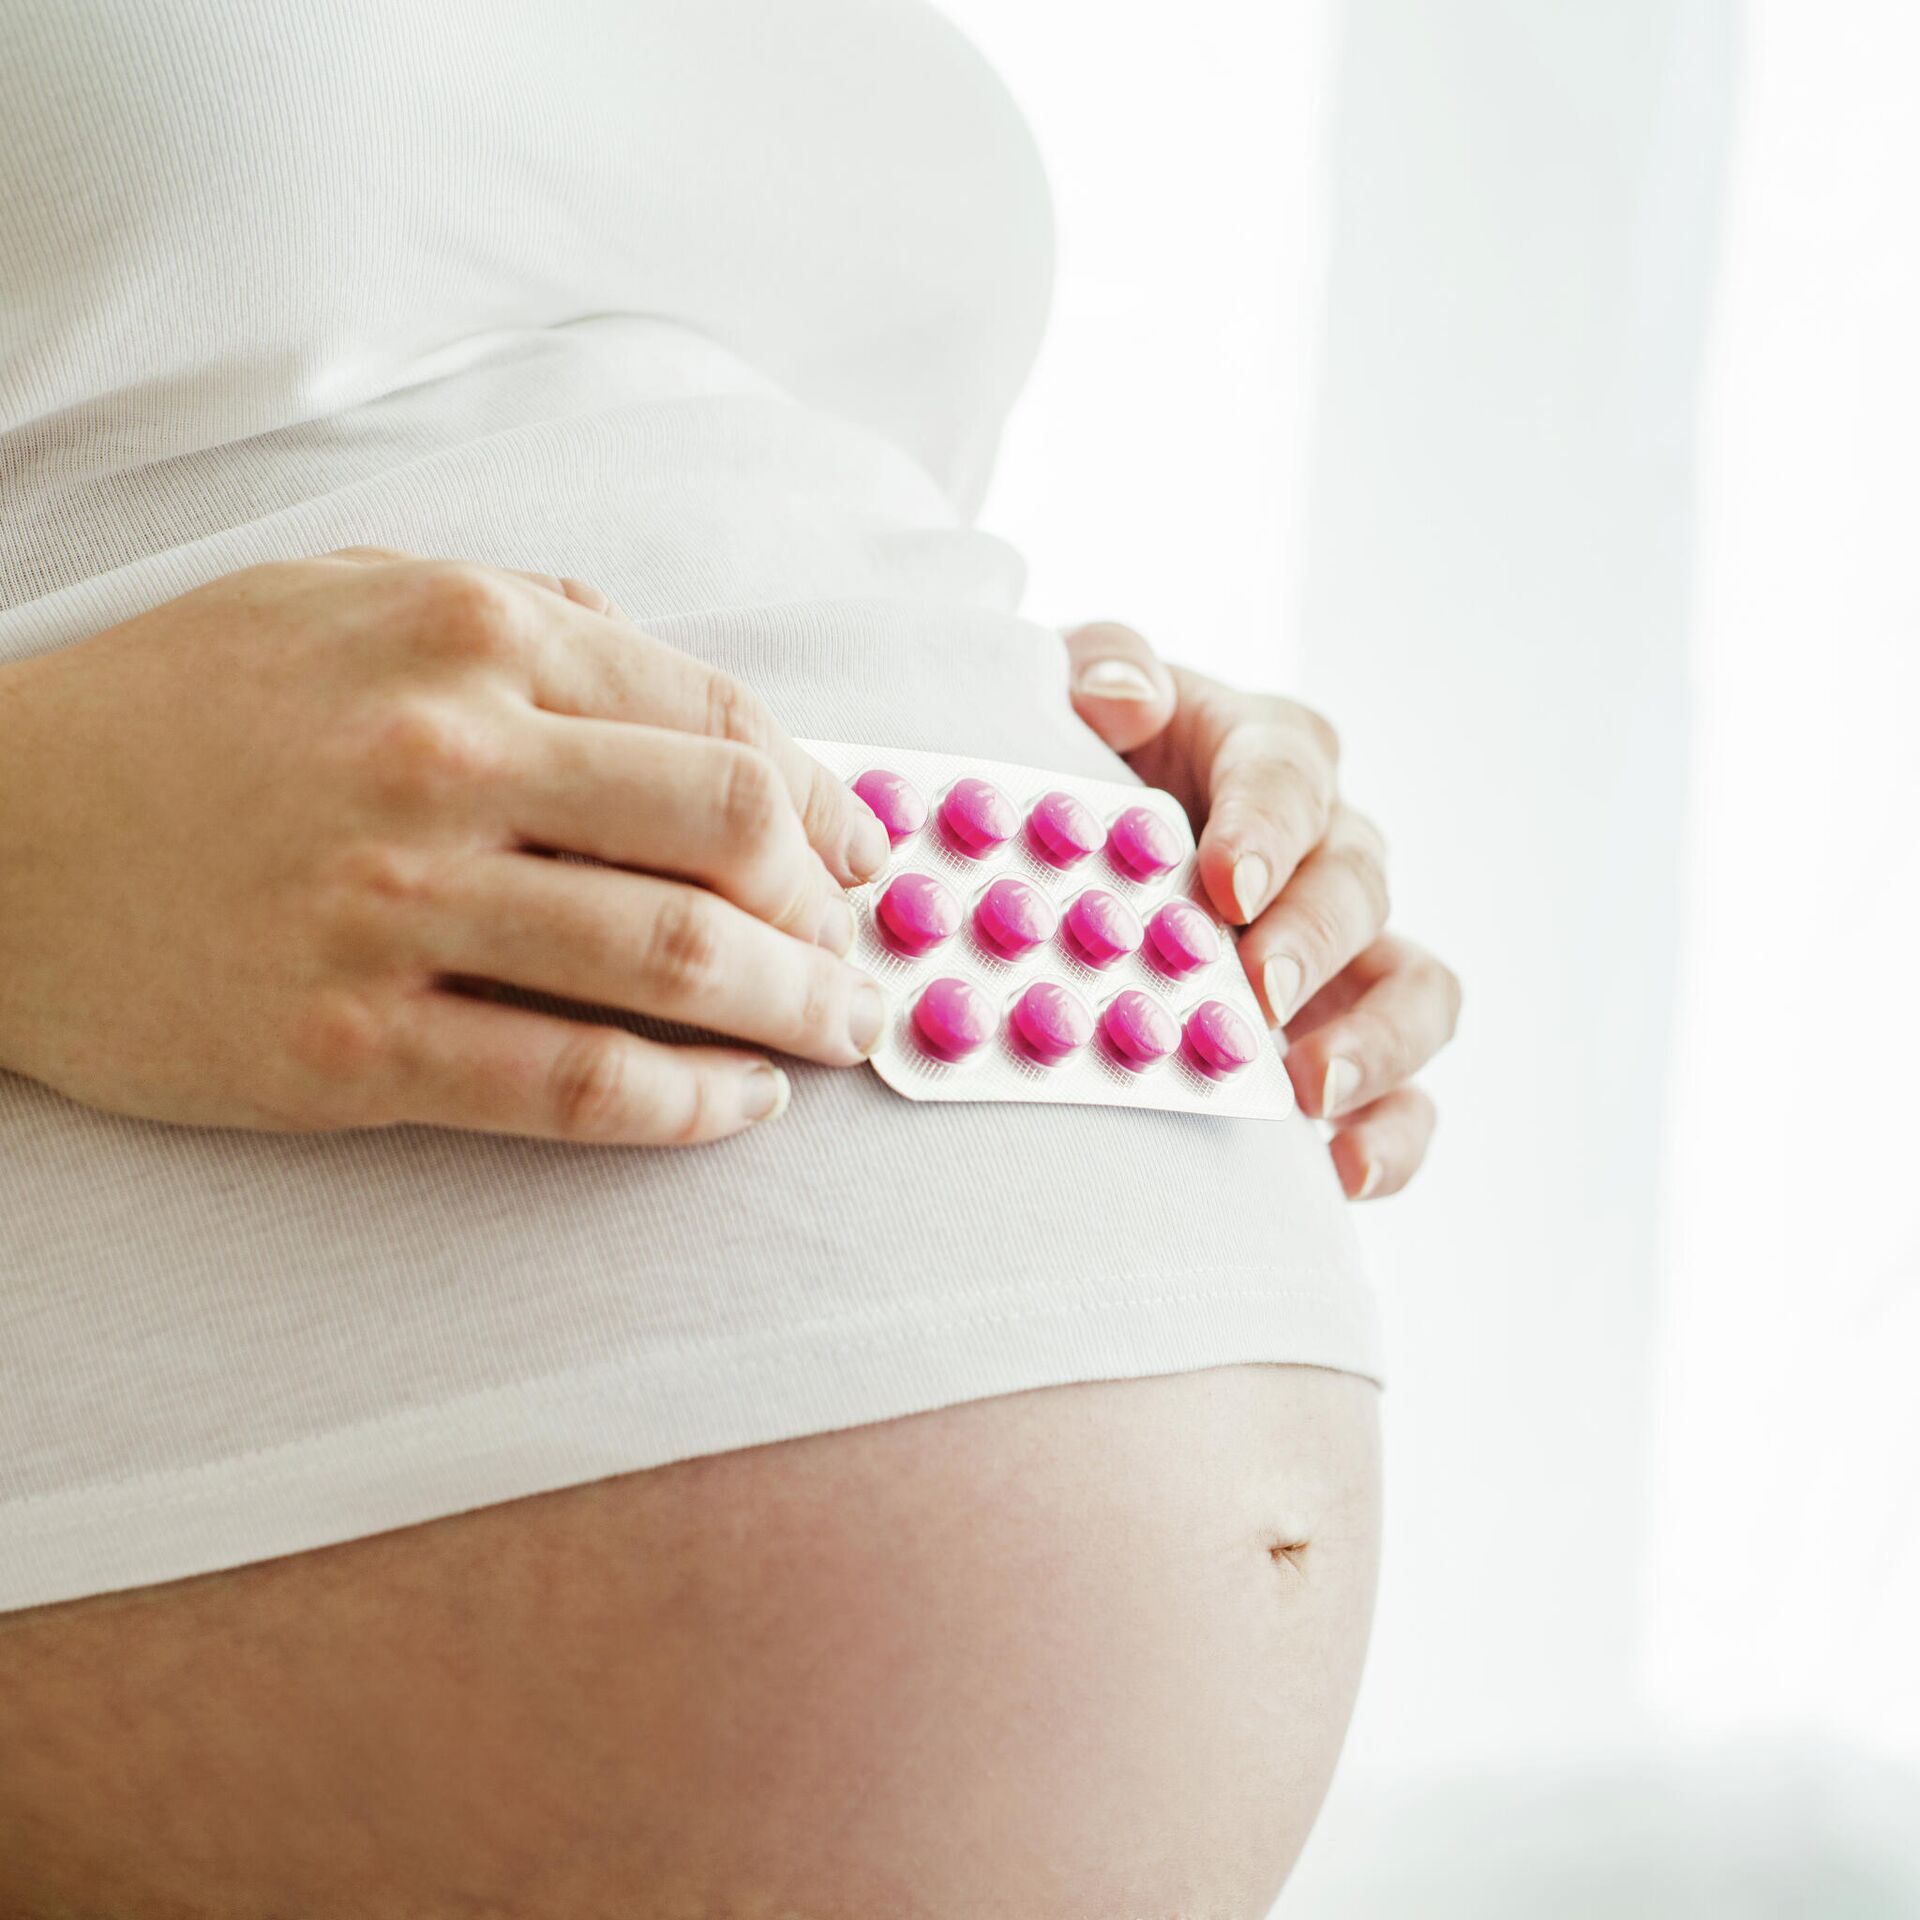 Как убрать обвисший живот после родов?